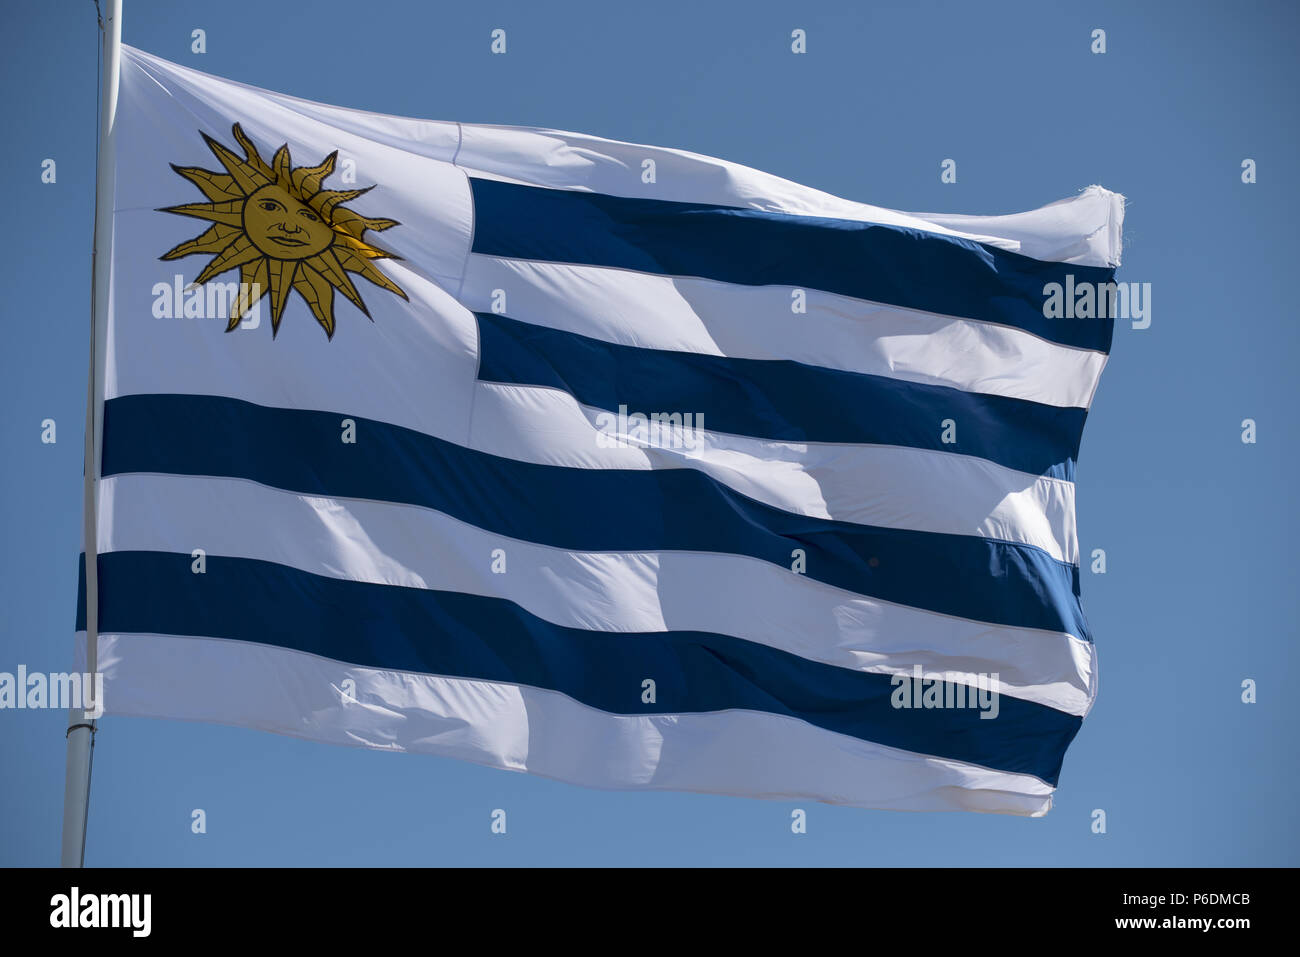 Racing Montevideo Uruguayan football club, silk texture, logo